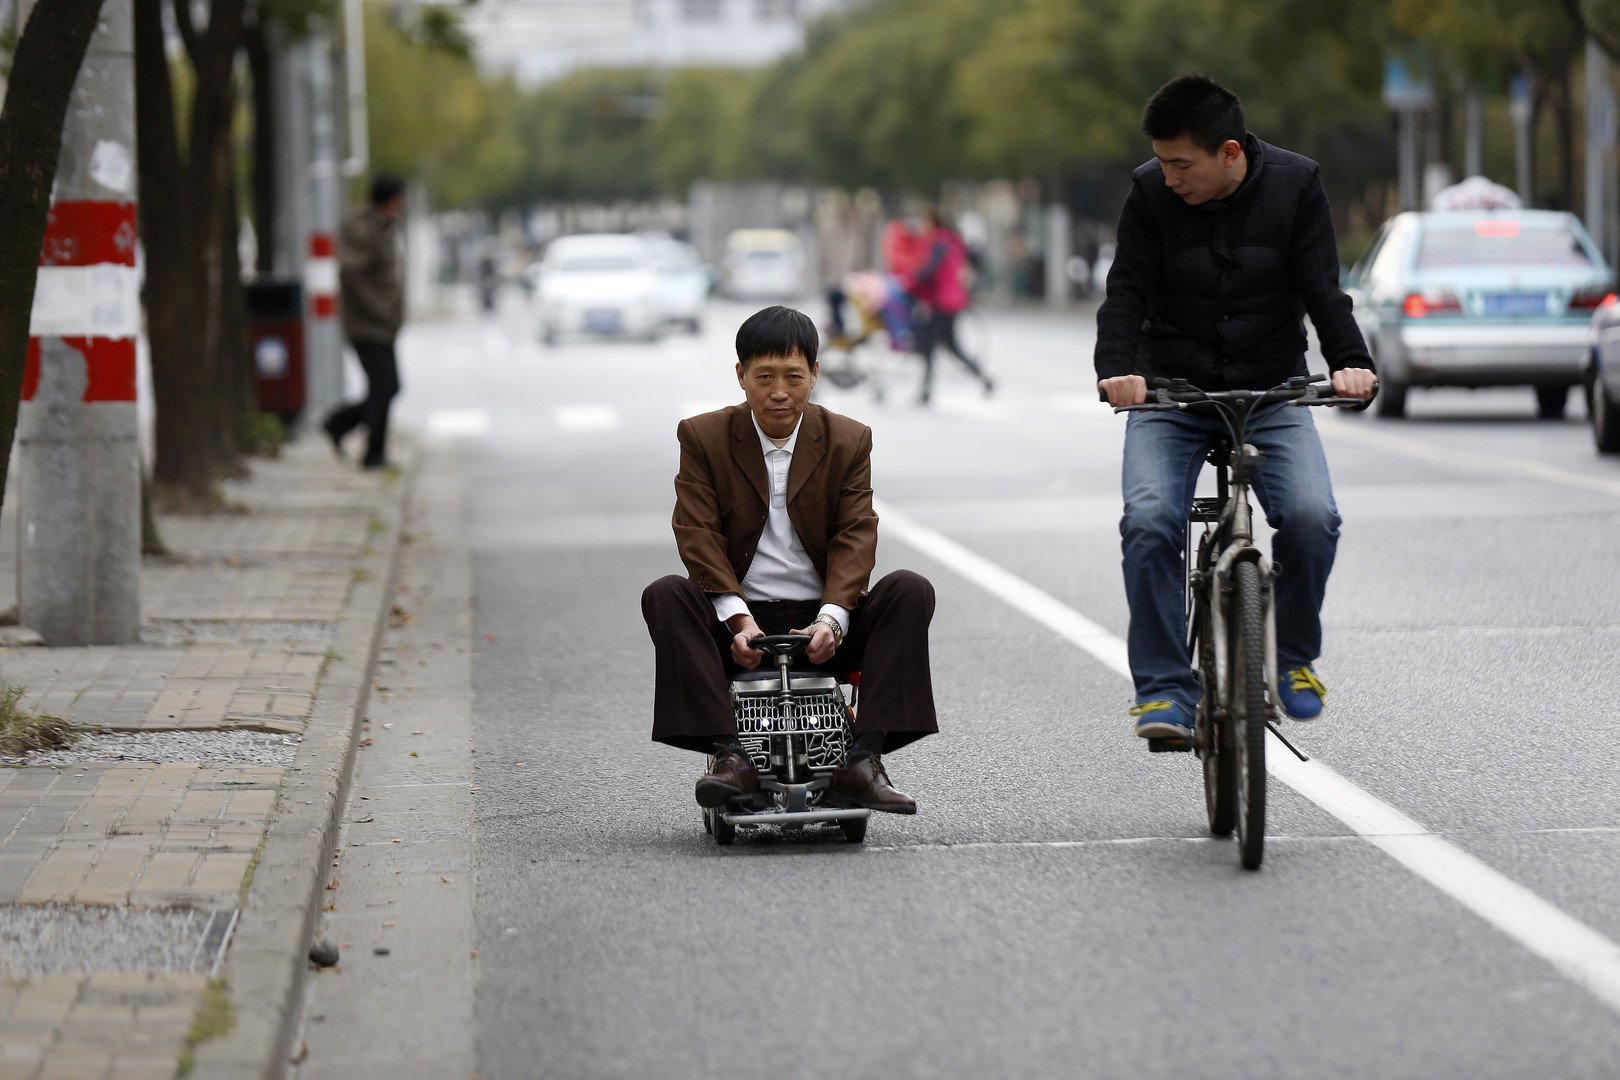 دراجة نارية مصغرة صنعها الصيني خو غيون البالغ من العمر 60 عاما، 9 ديسمبر/كانون الأول 2014 